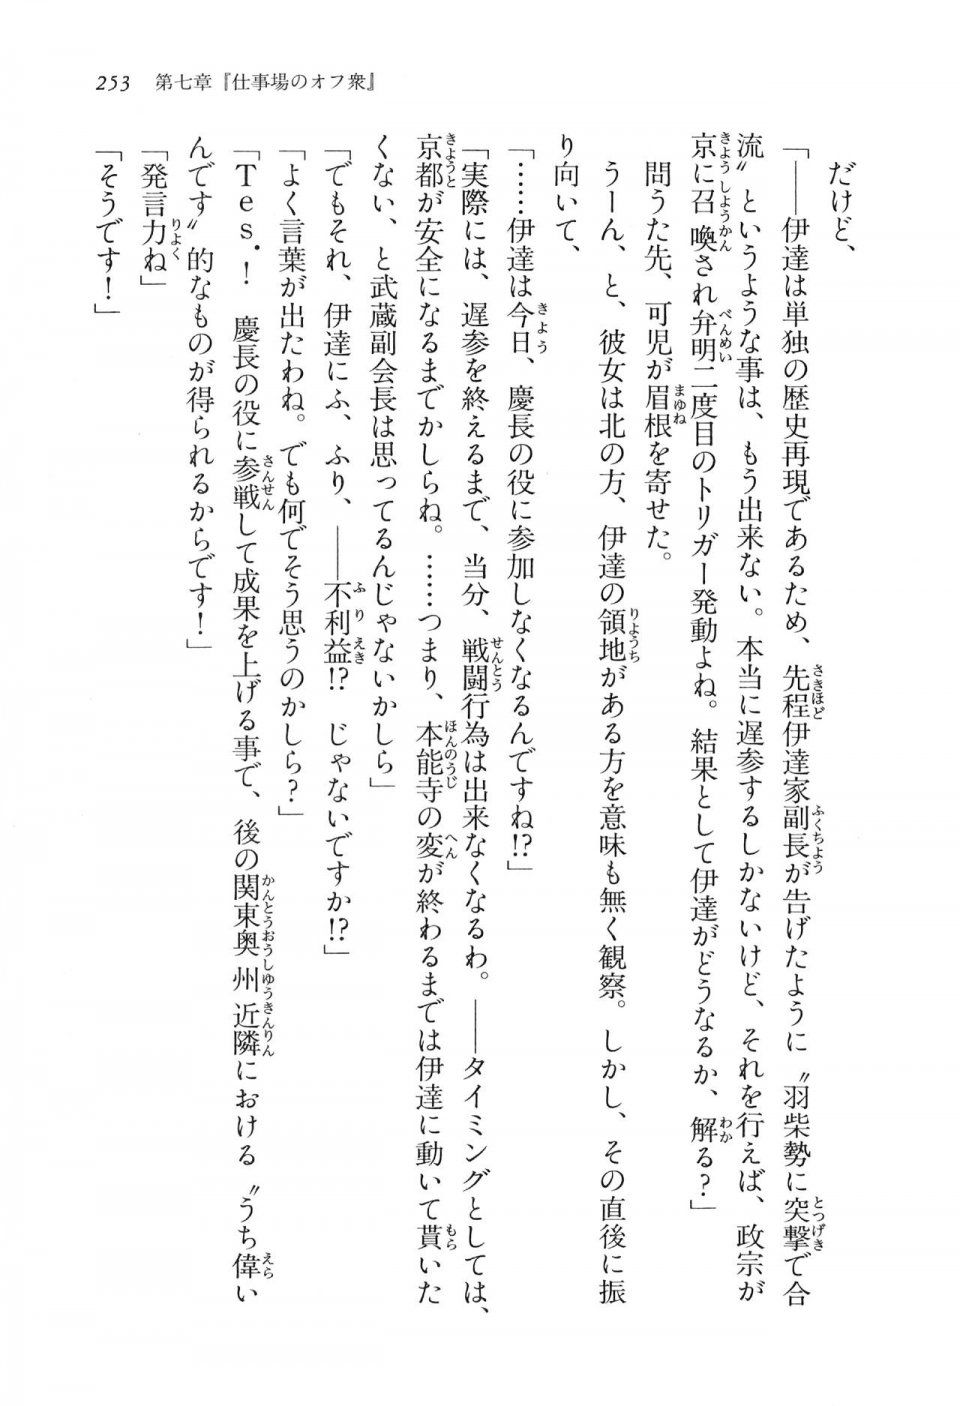 Kyoukai Senjou no Horizon LN Vol 16(7A) - Photo #253